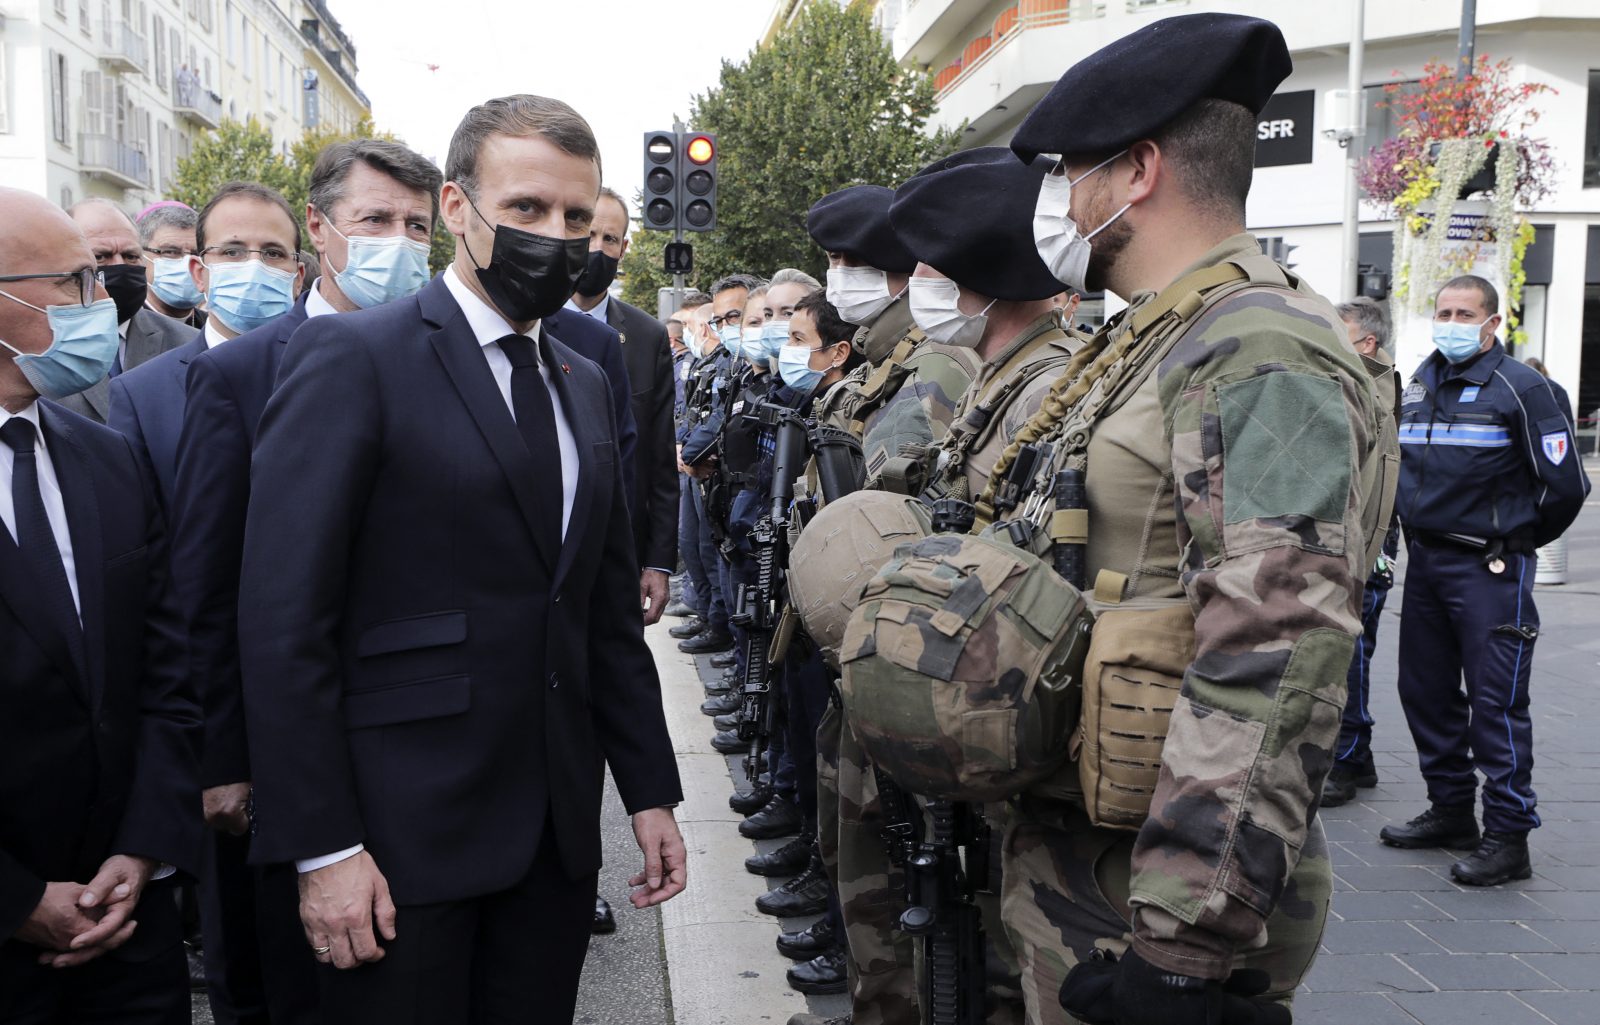 Frankreichs Präsident Emmanuel Macron (M.) sprach den Sicherheitskräften in Nizza seinen Dank aus Foto: picture alliance / abaca